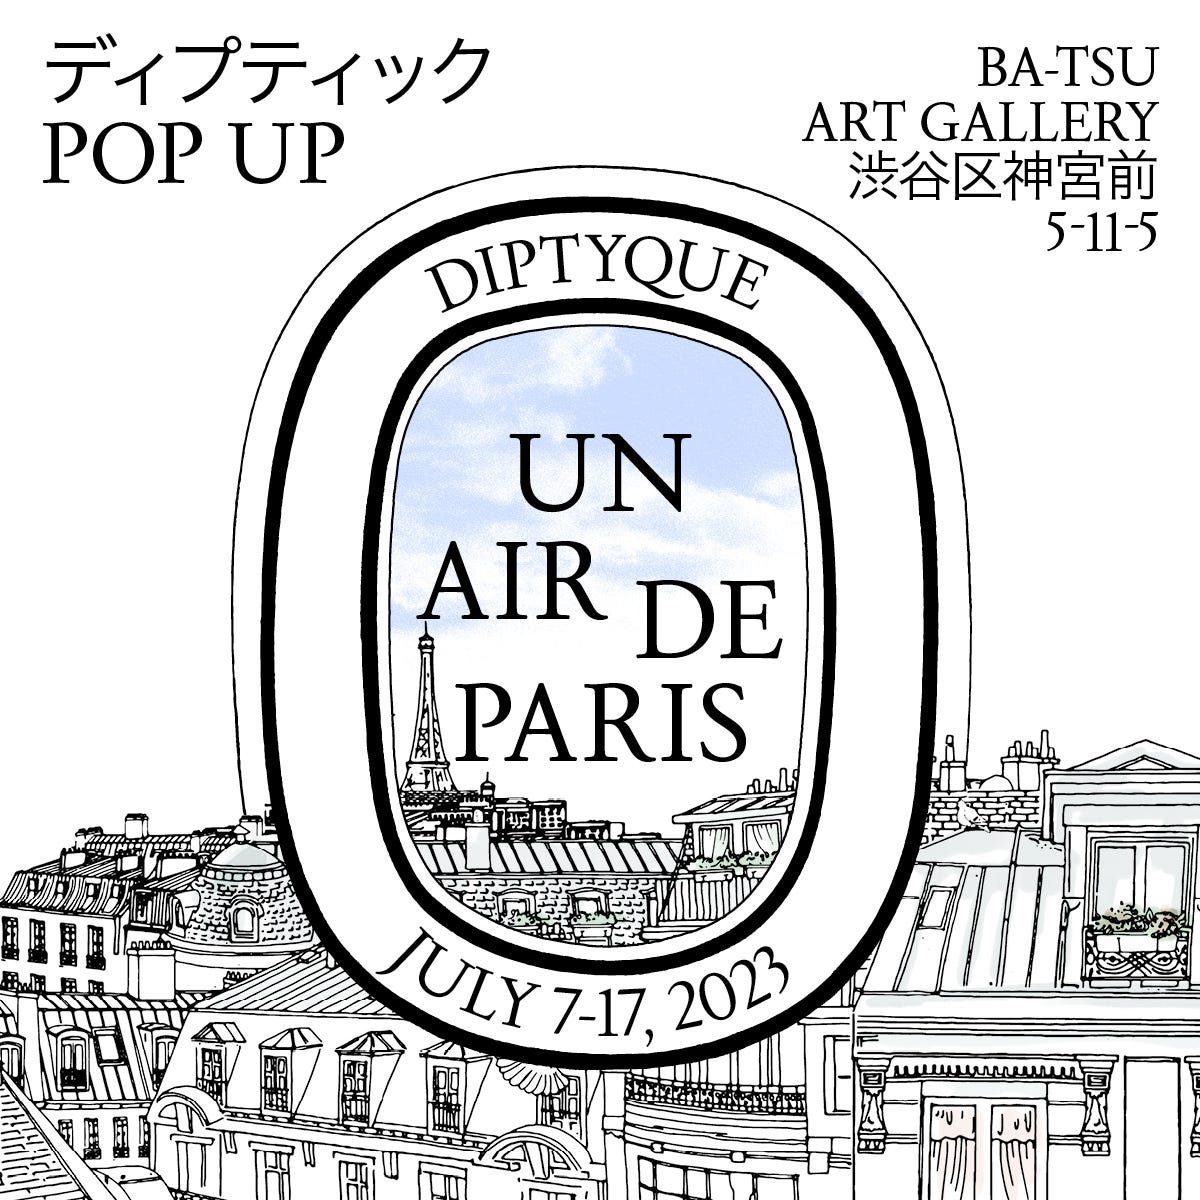 ディプティック ポップアップイベント UN AIR DE PARIS (アン エール